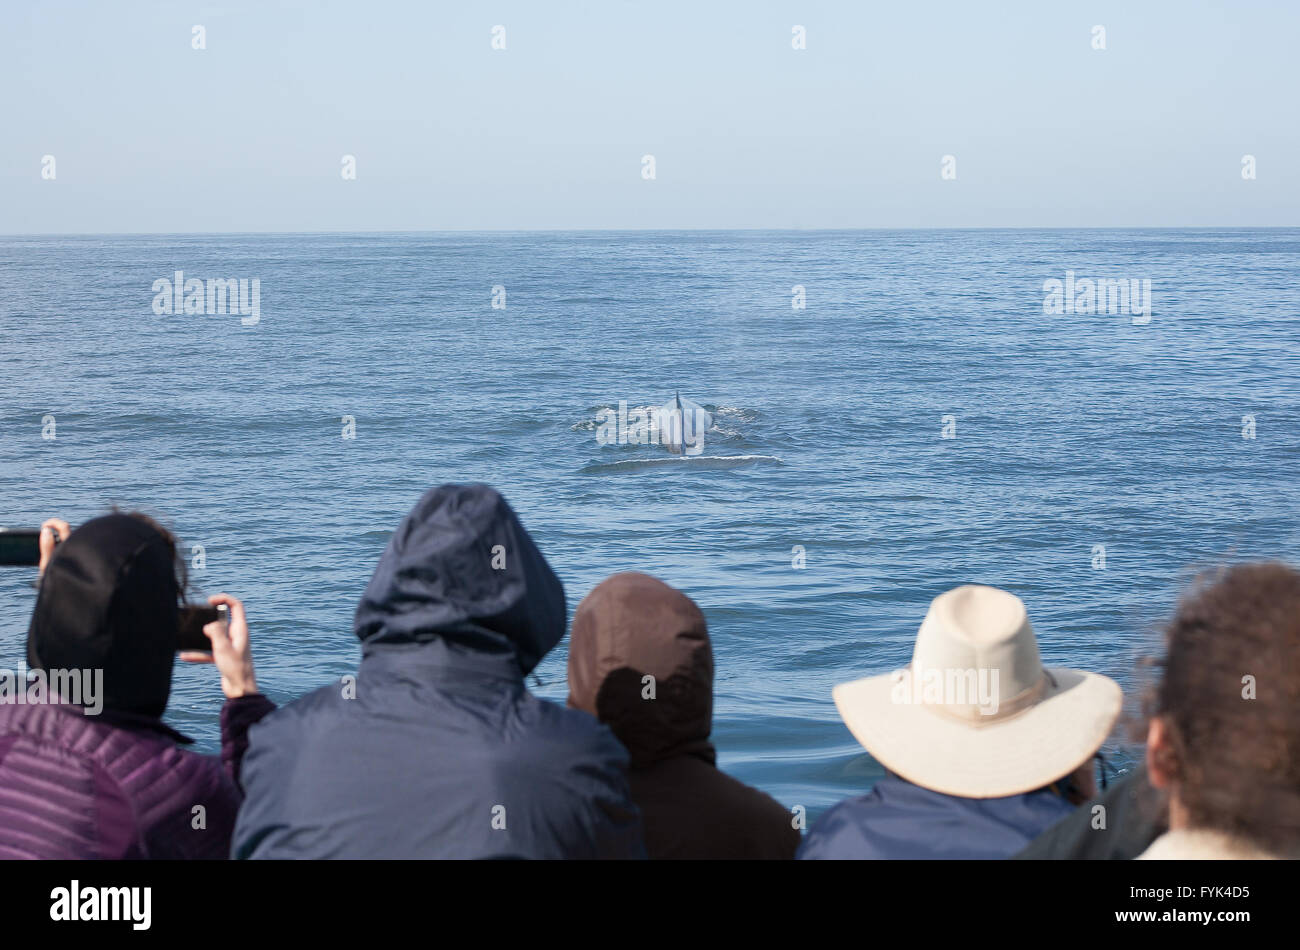 Sur une croisière d'observation des baleines dans la région de Long Beach, une baleine apparaît comme spectateurs de prendre des photos avec leur téléphone cellulaire. Banque D'Images